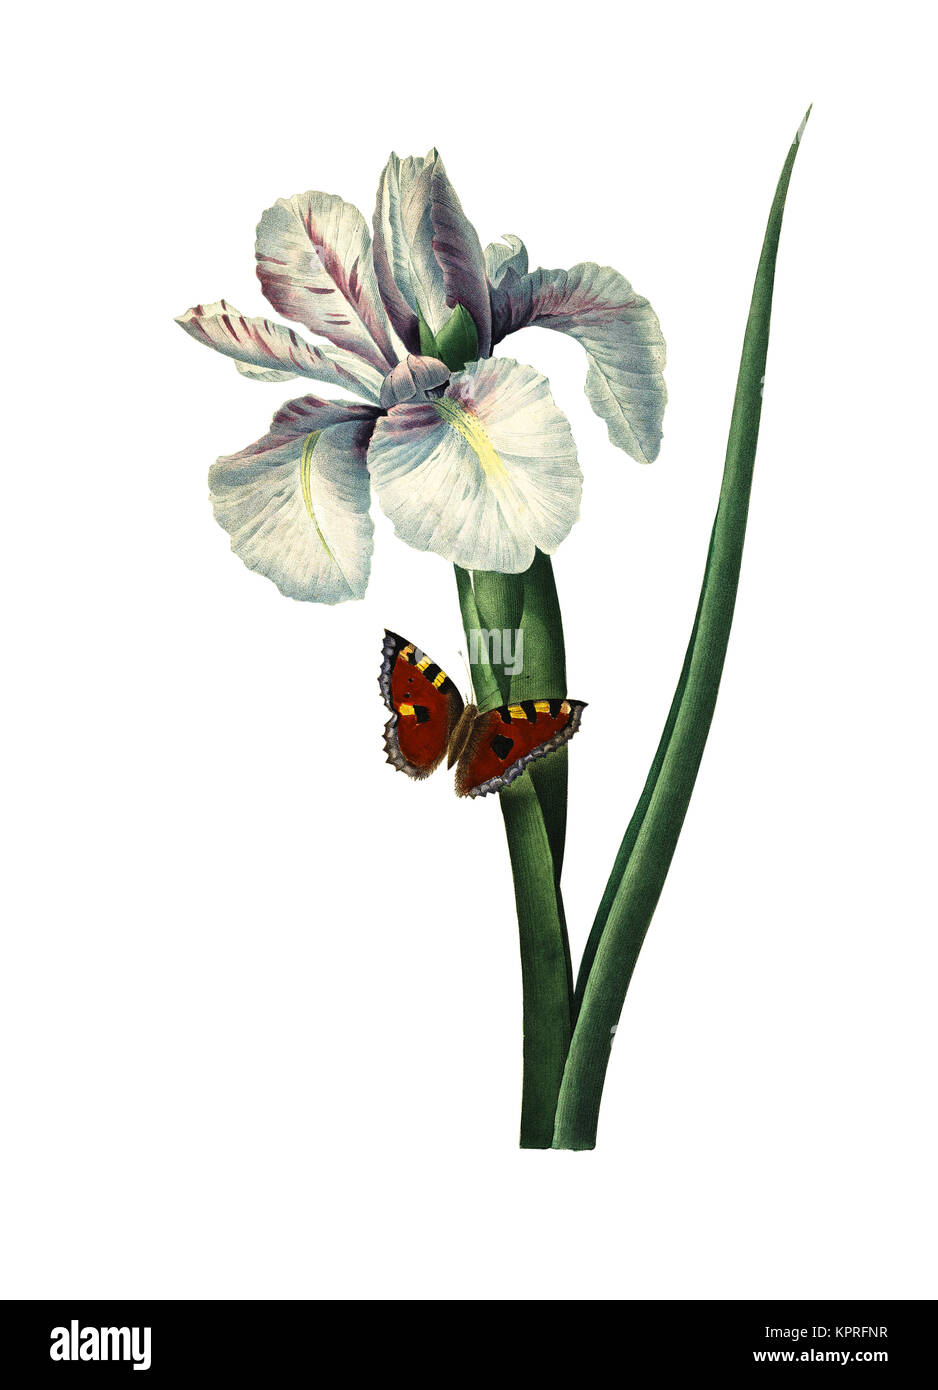 19ème siècle Illustration d'un Iris xiphium, également connu sous le nom de l'espagnol Iris. Gravure par Pierre-Joseph Redoute. Publié dans Choix des Plus Belles fleurs Banque D'Images